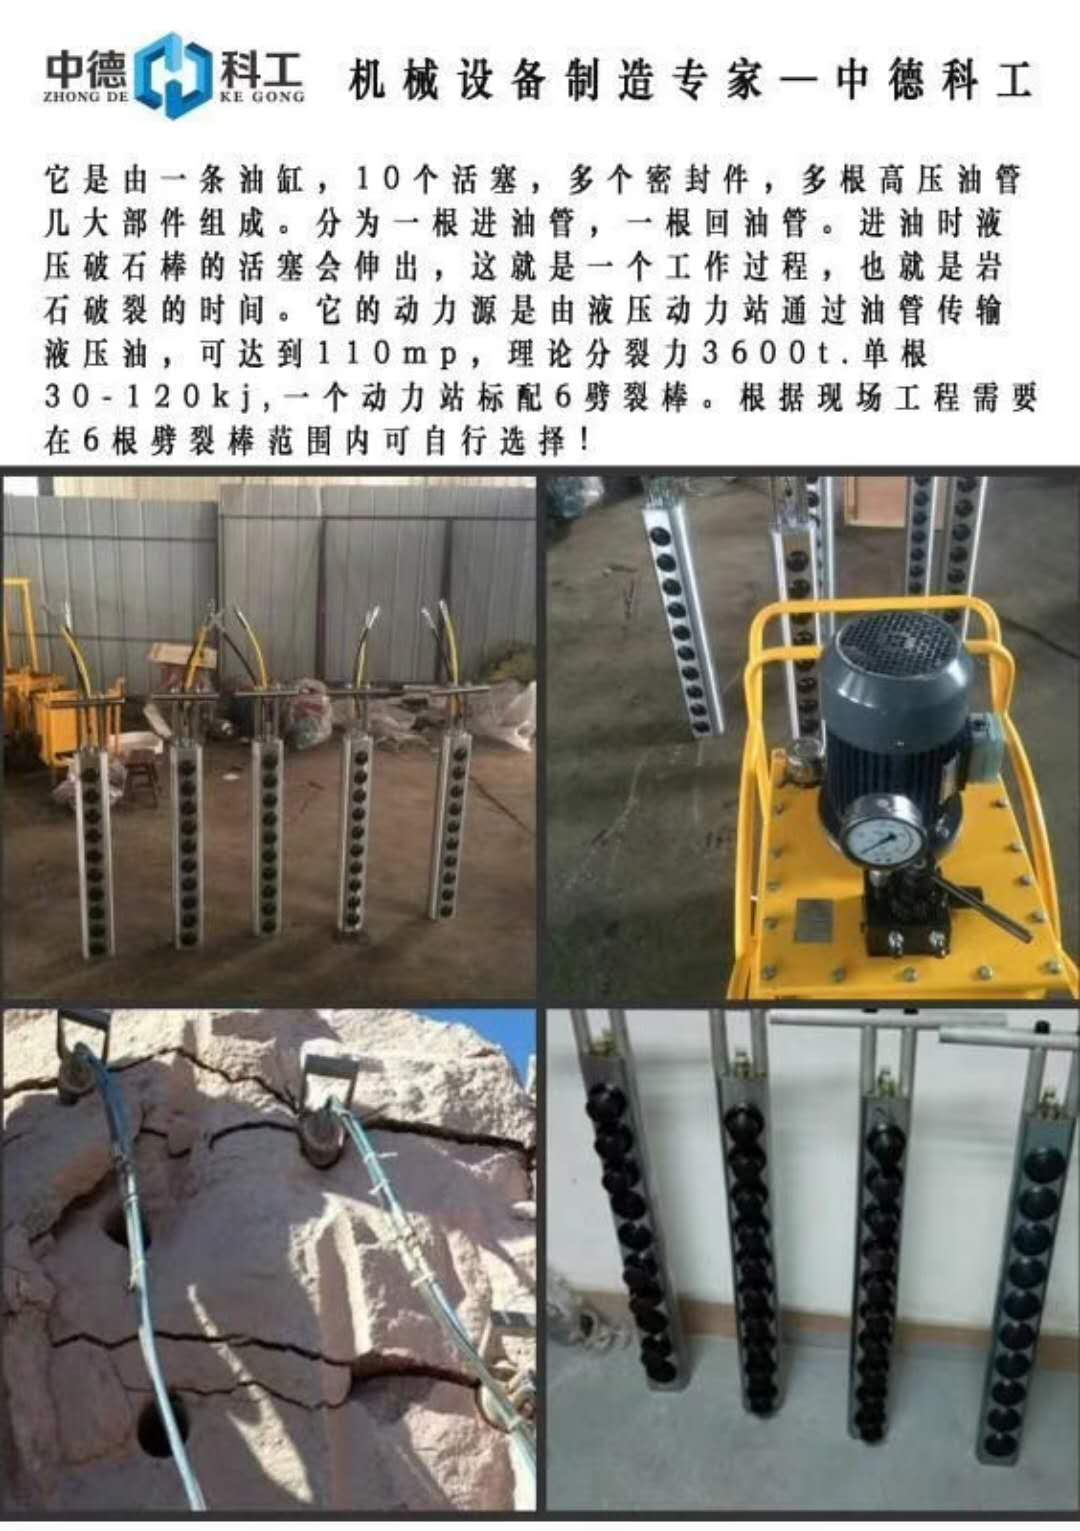 修路清除硬石头竖井开挖机械撑裂机四川泸州